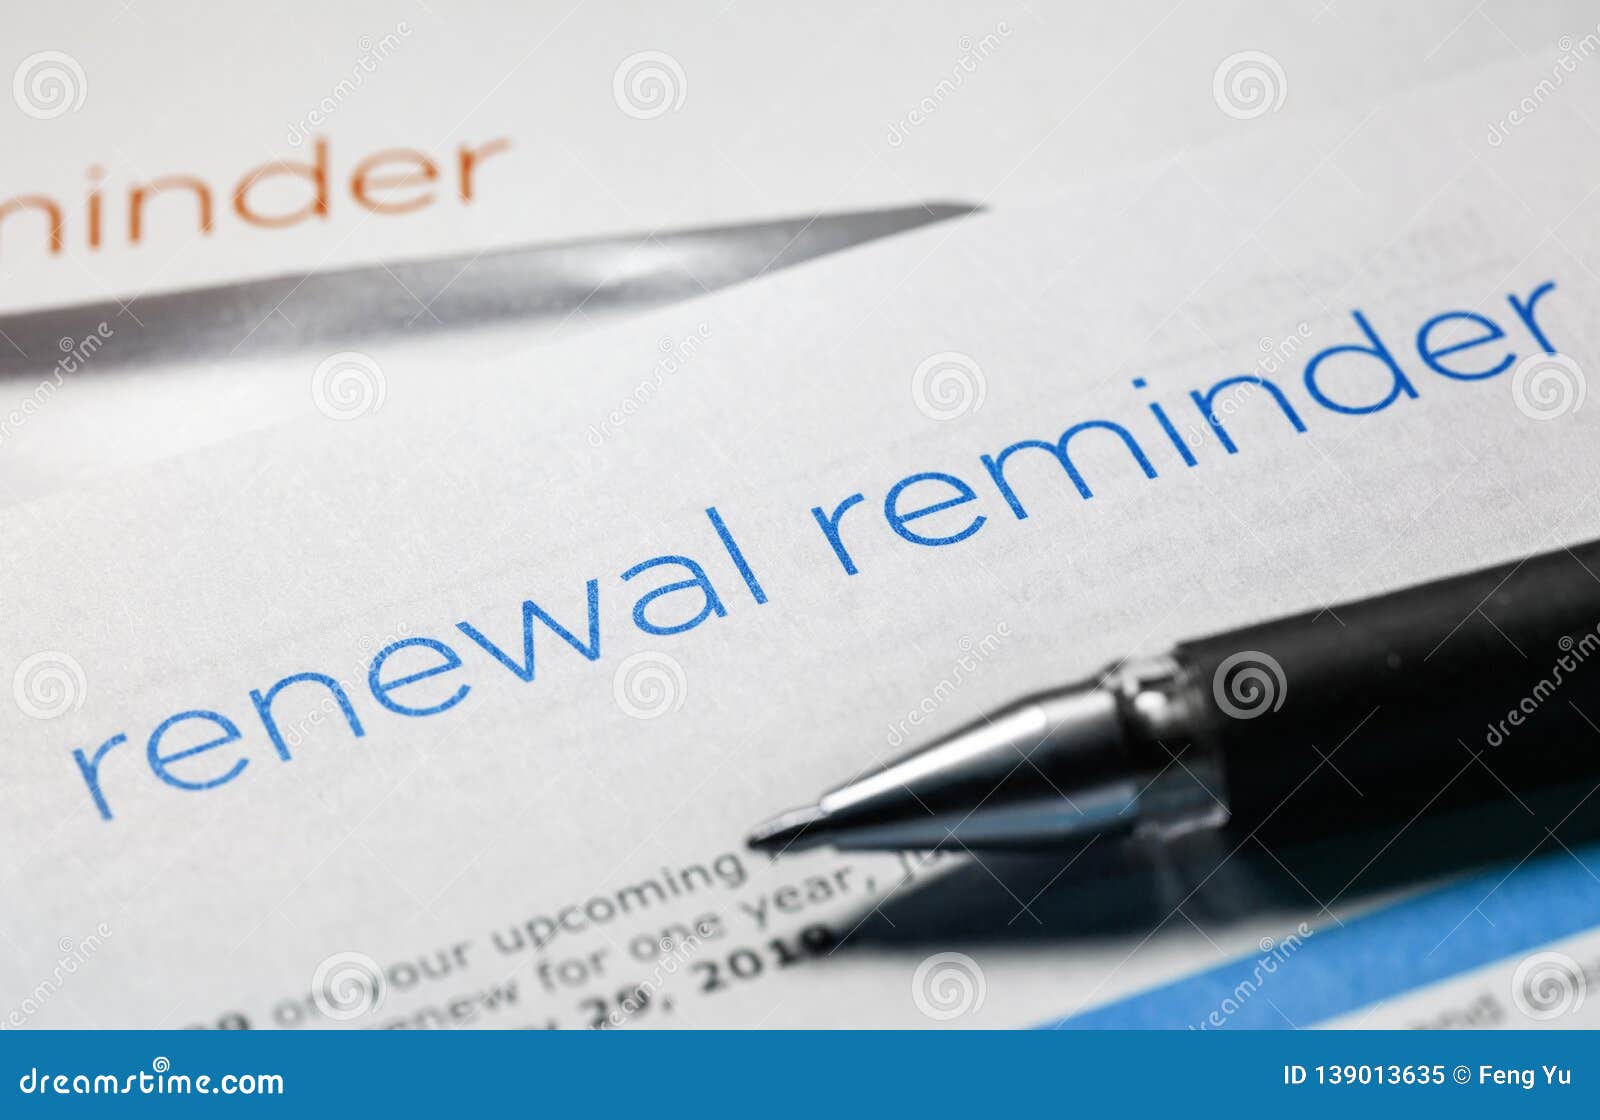 renewal reminder letter